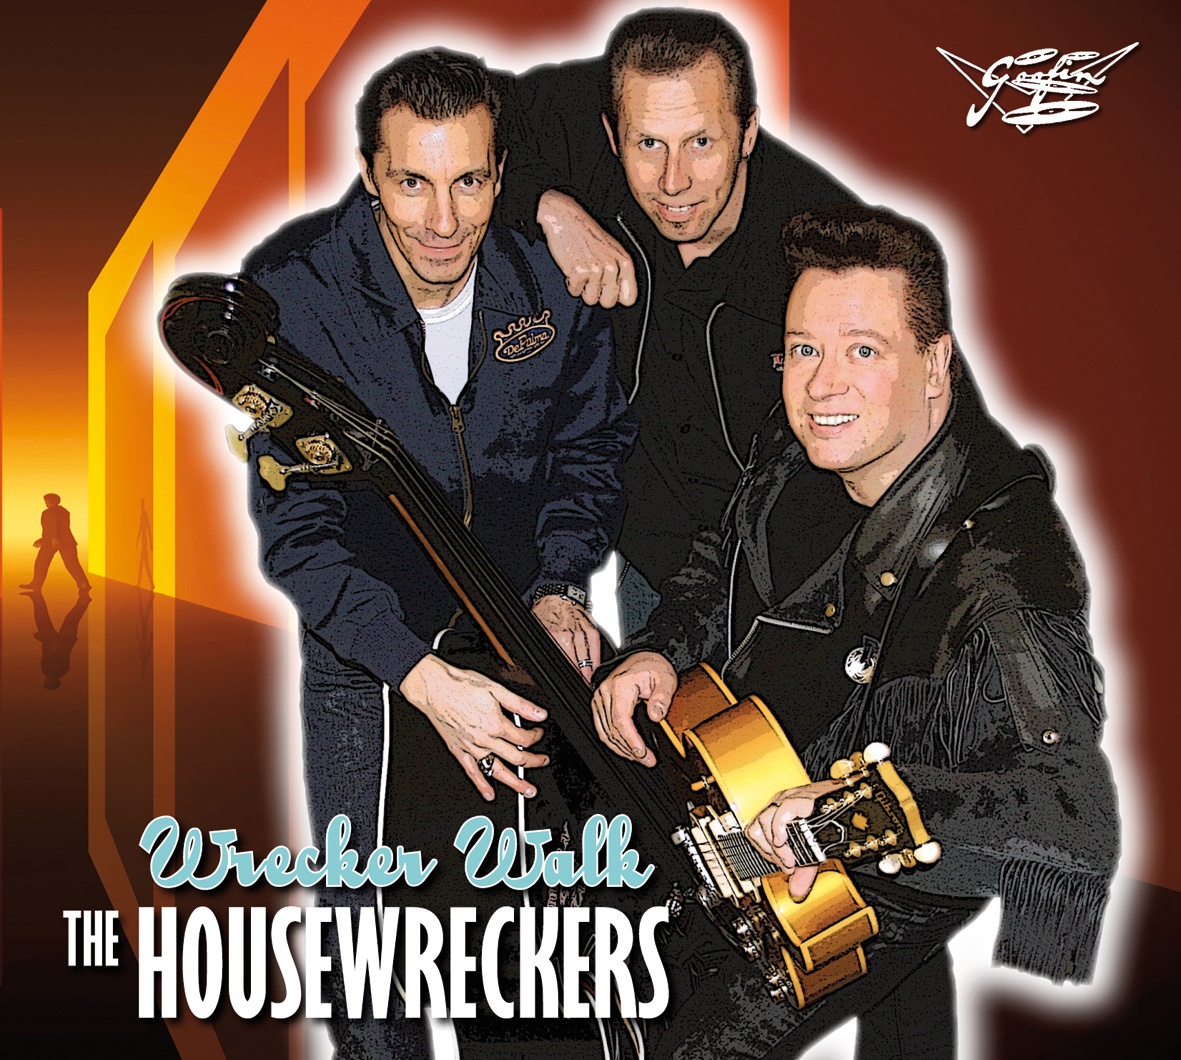 The Housewreckers - Wrecker Walk - CD